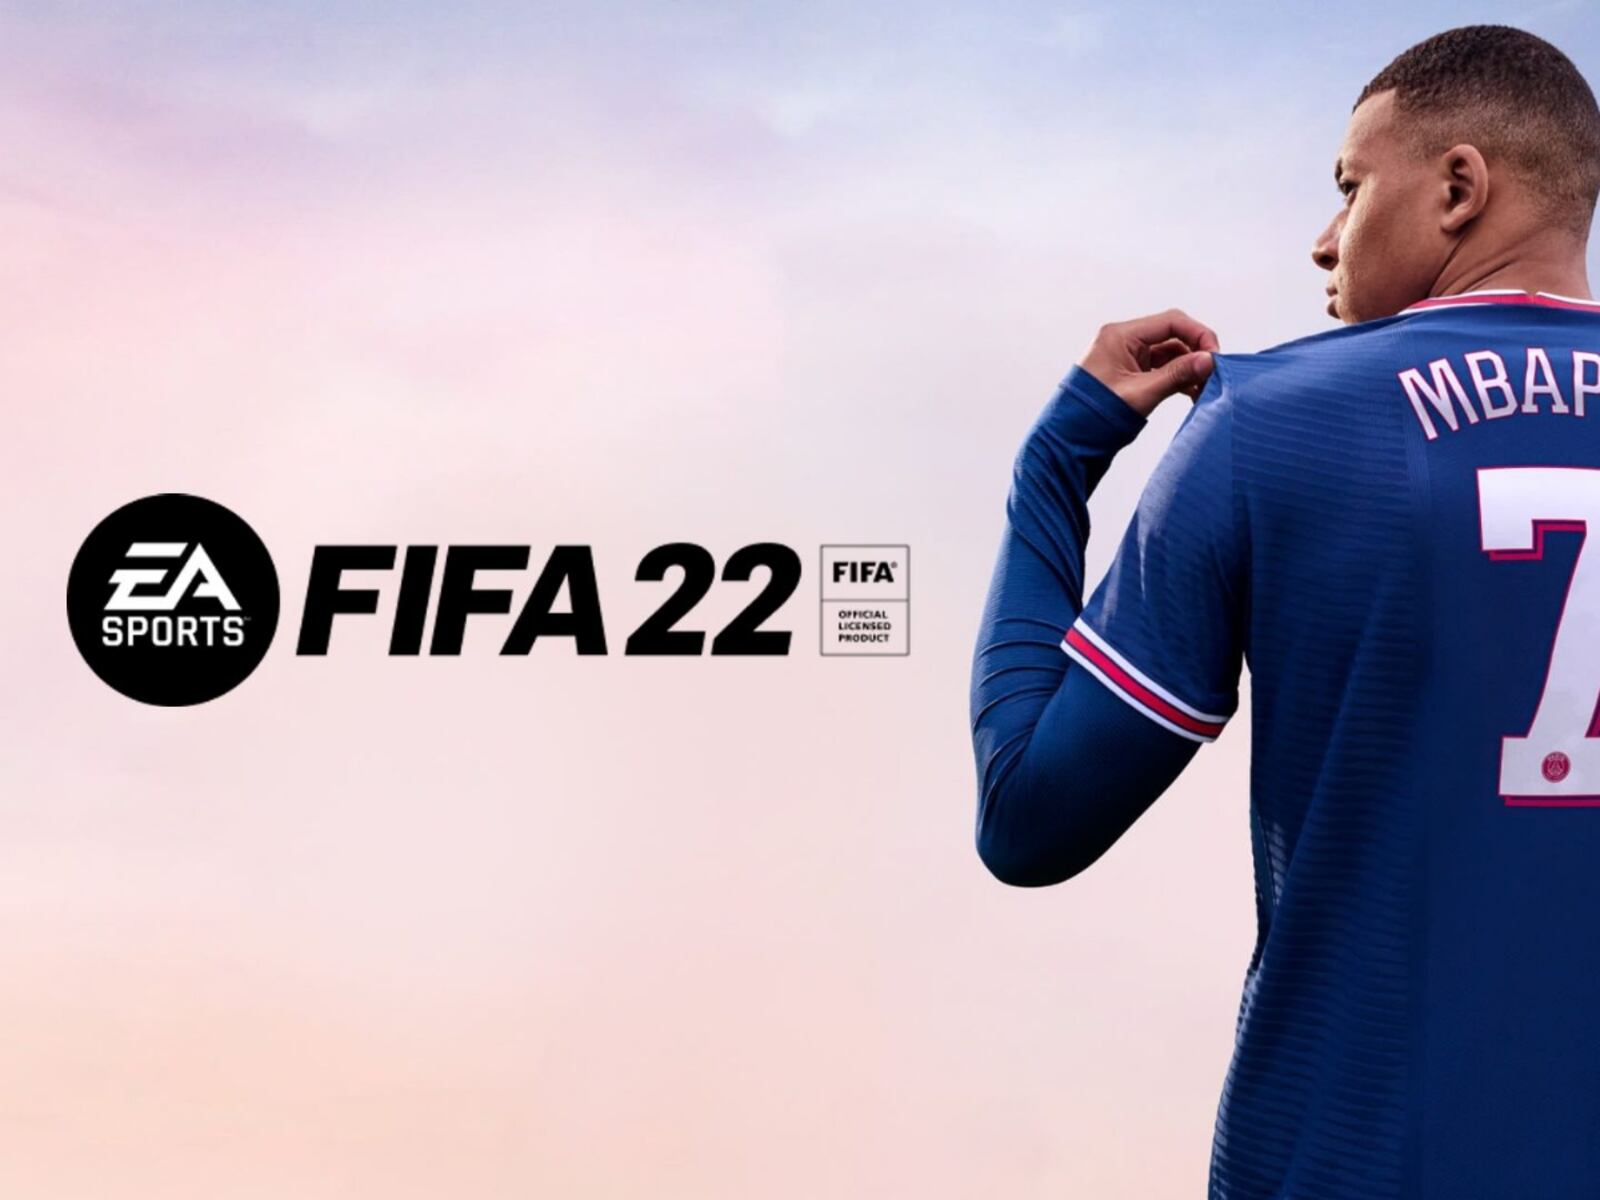 Novedades: Lo nuevo que ofrece el FIFA 22